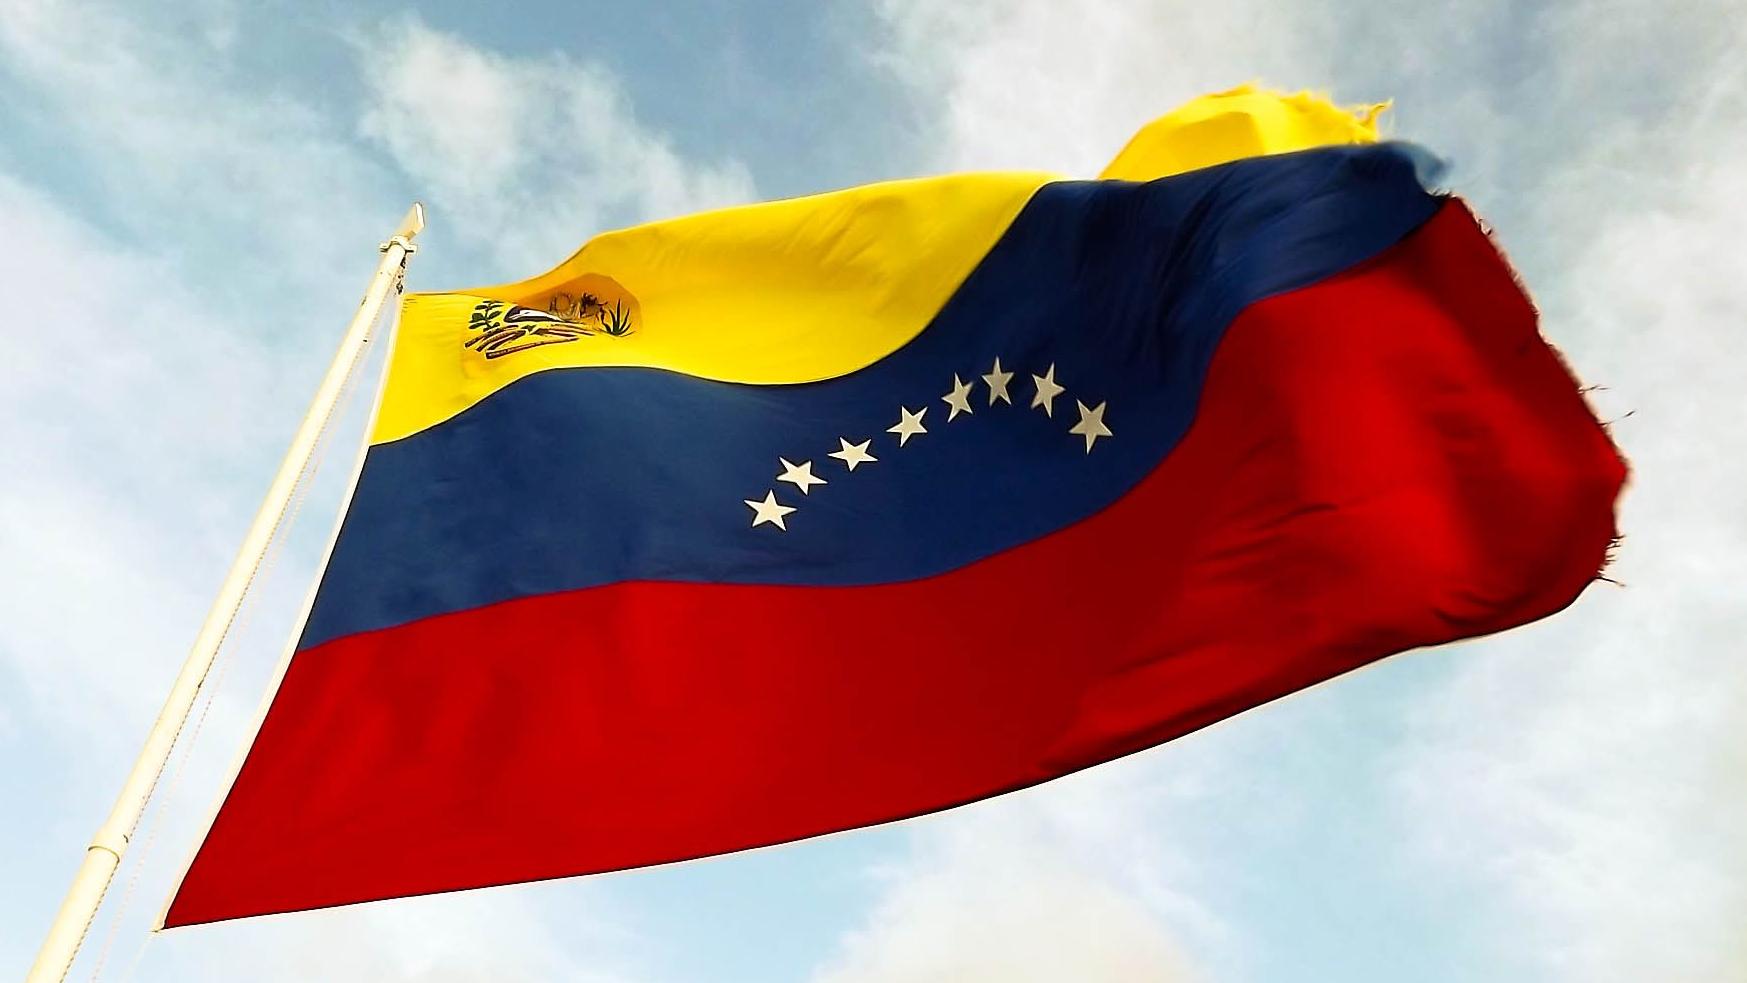 Великая Венесуэла. Флаг Венесуэлы. Флаг Колумбии и Венесуэлы. Конфликт Венесуэлы и Колумбии флаги. Внешняя политика венесуэлы